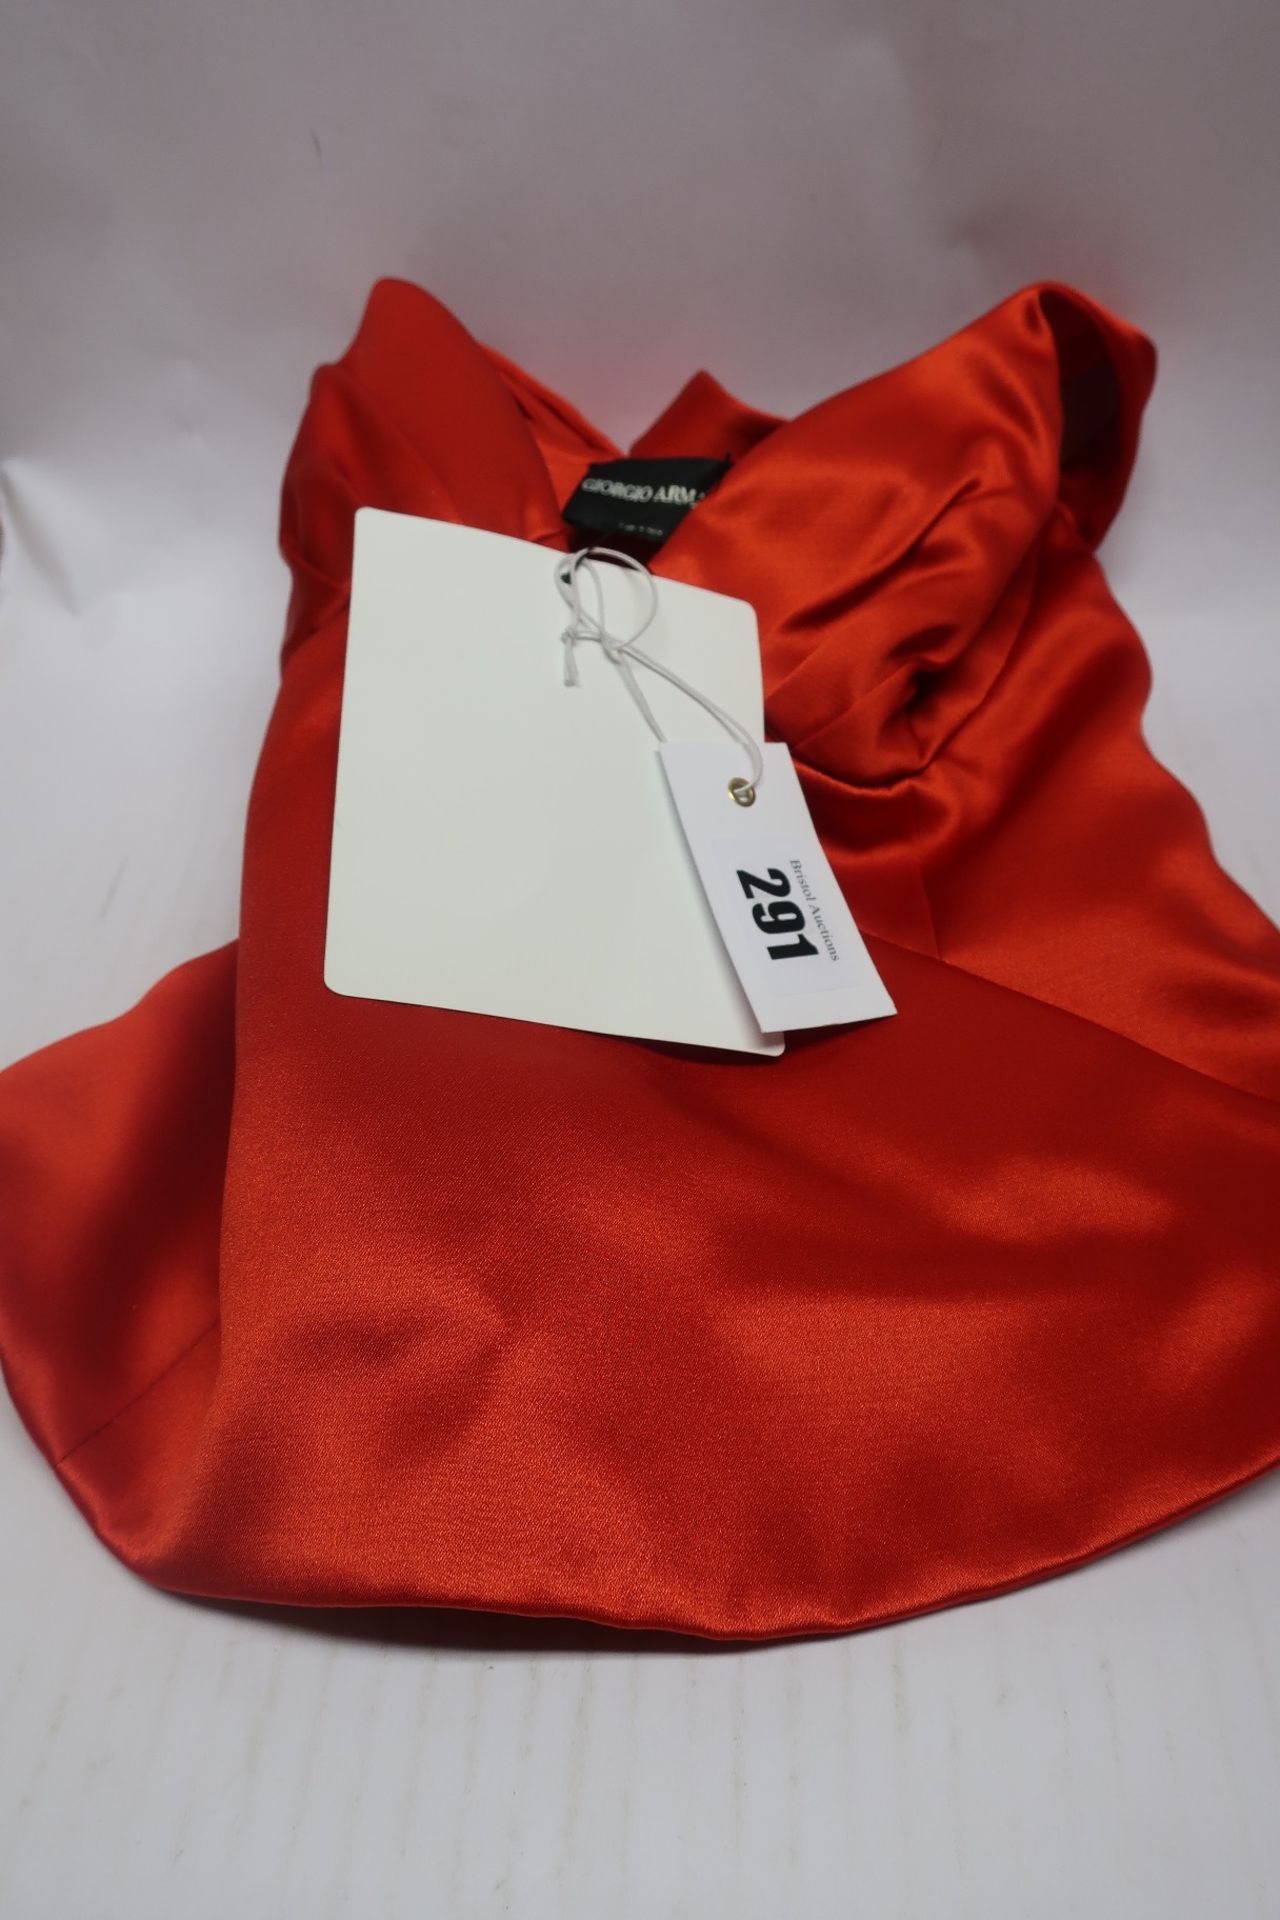 A Giorgio Armani red top (Size unknown).